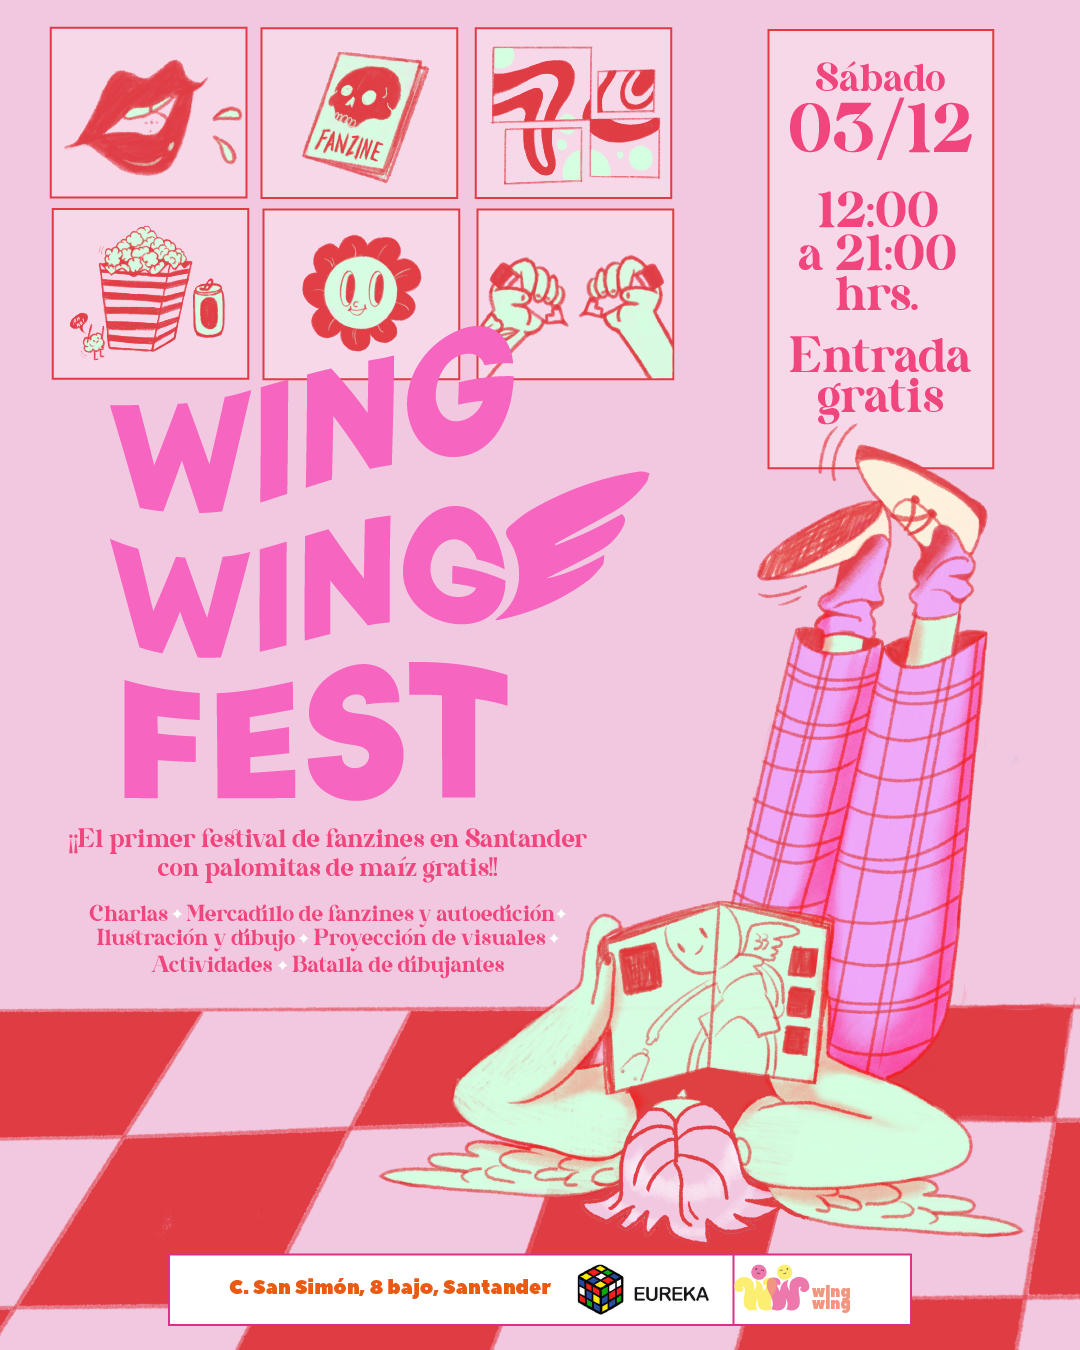 Wing Wing Fest